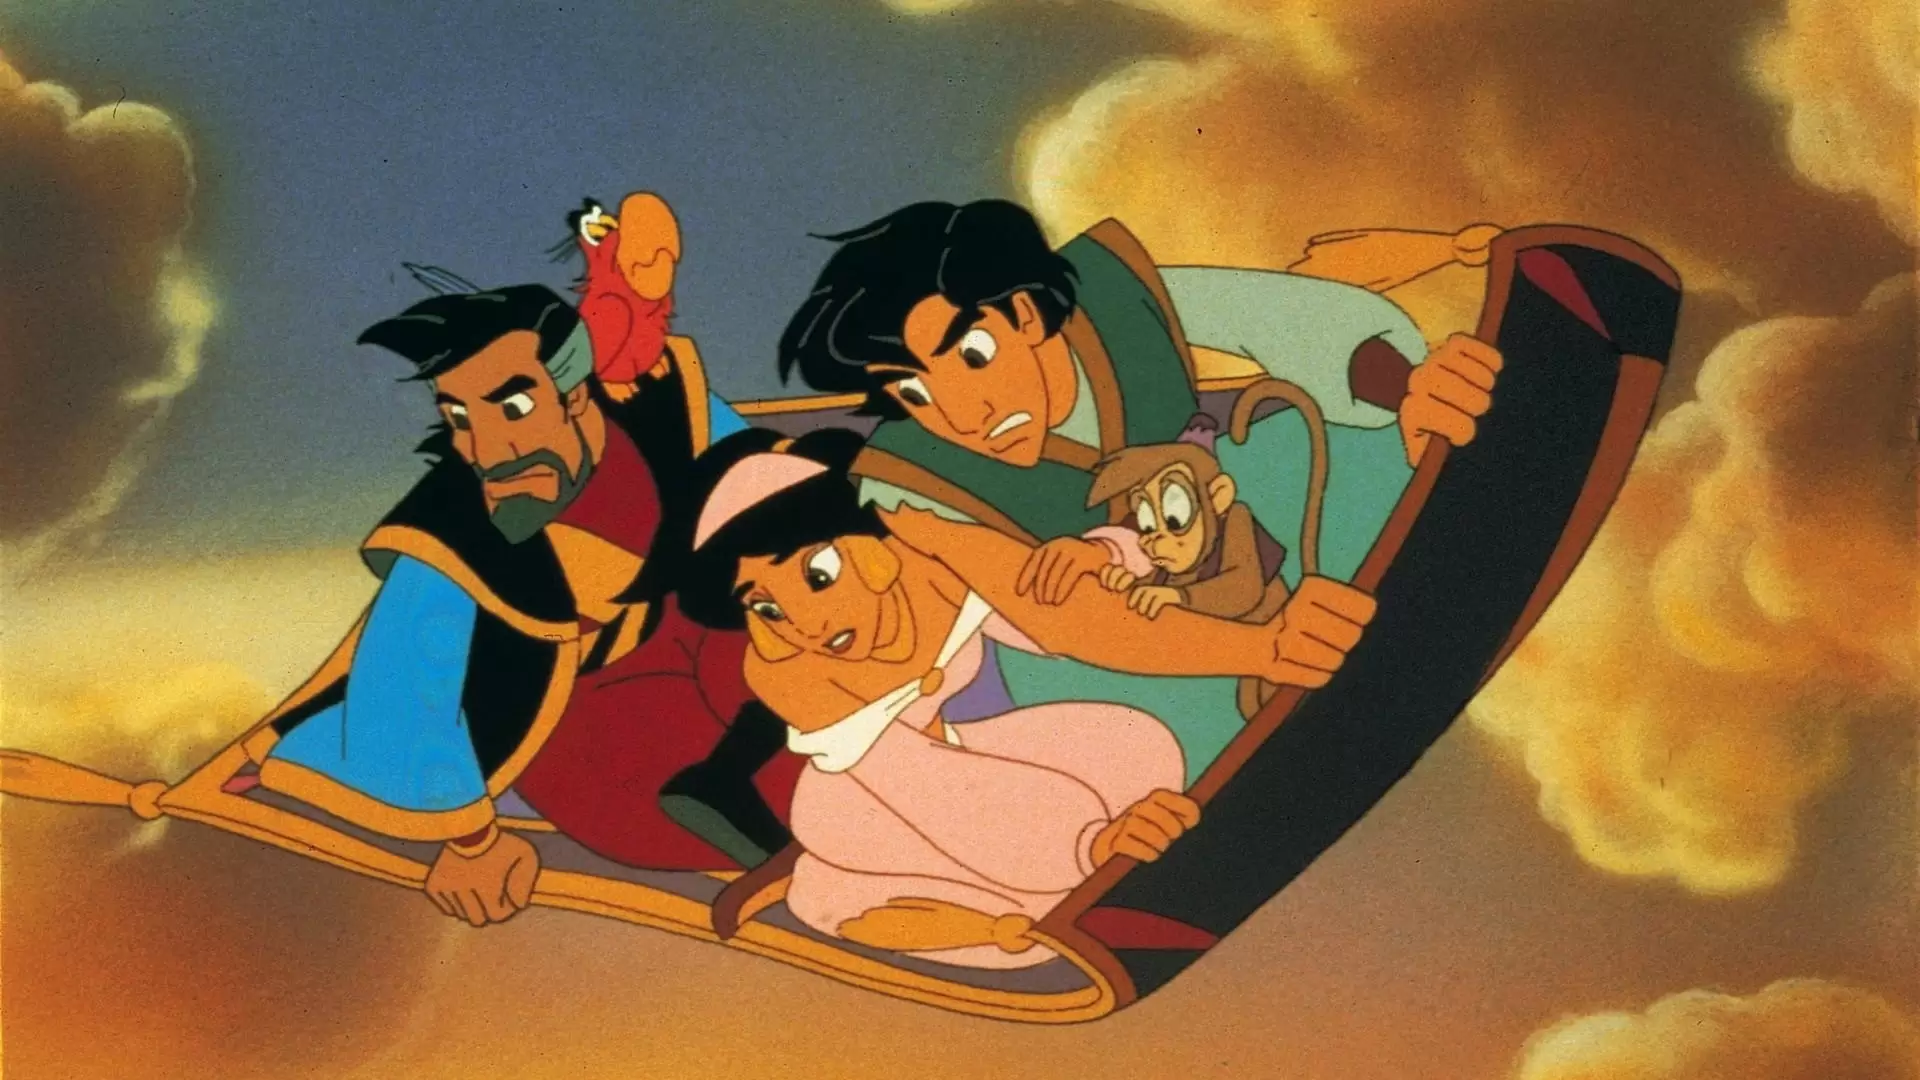 دانلود انیمیشن Aladdin and the King of Thieves 1996 (علاءالدین و پادشاه دزدها) با زیرنویس فارسی و تماشای آنلاین